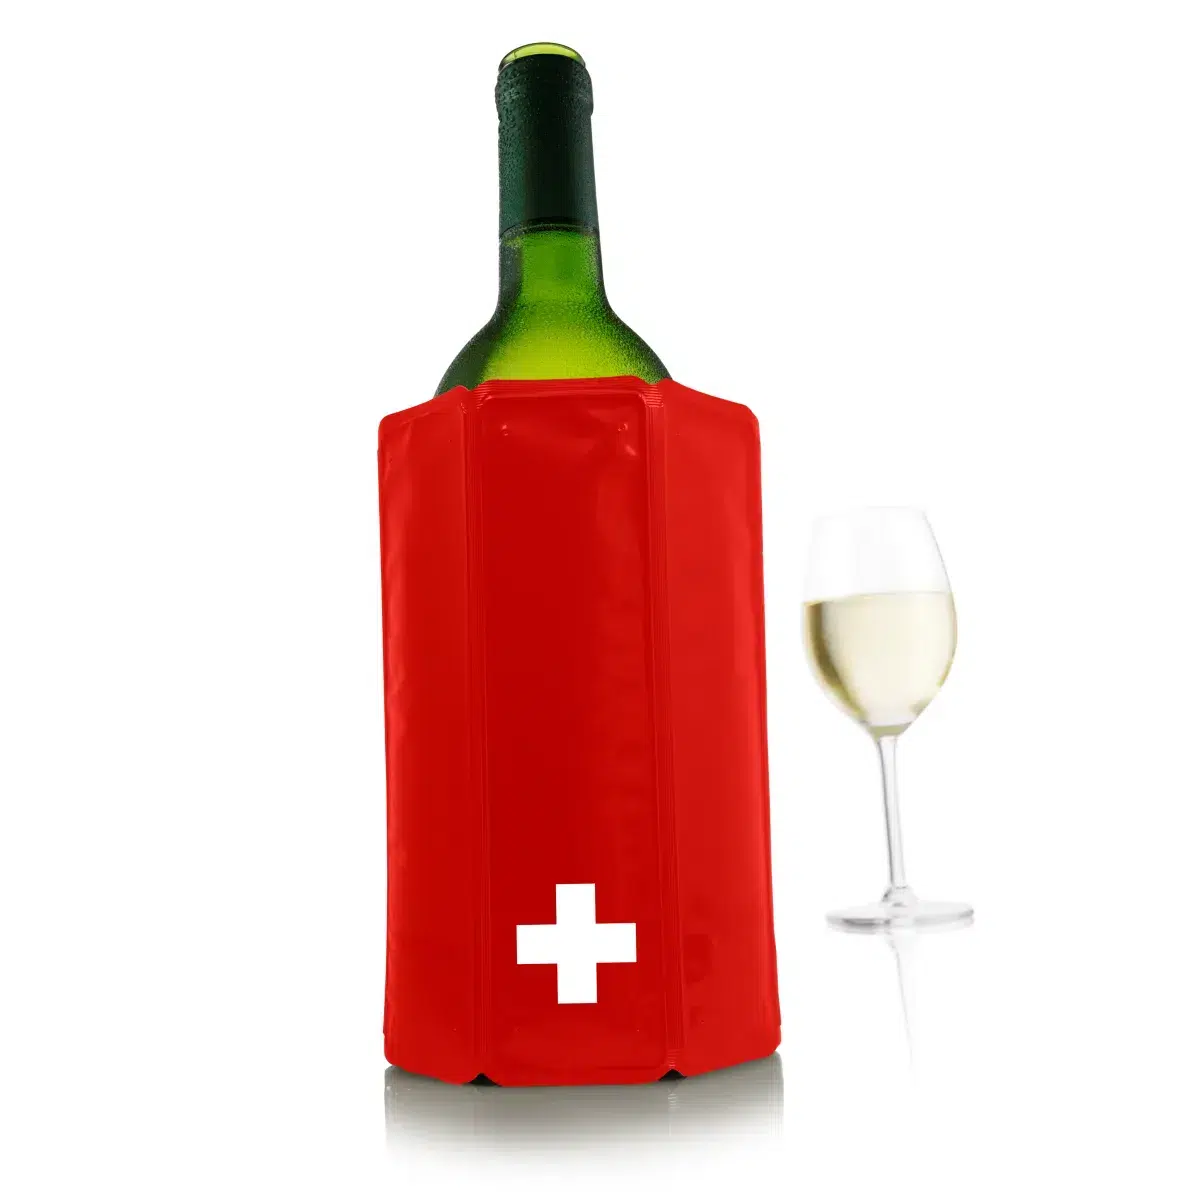 Une bouteille de vin suisse et un verre sur fond blanc.